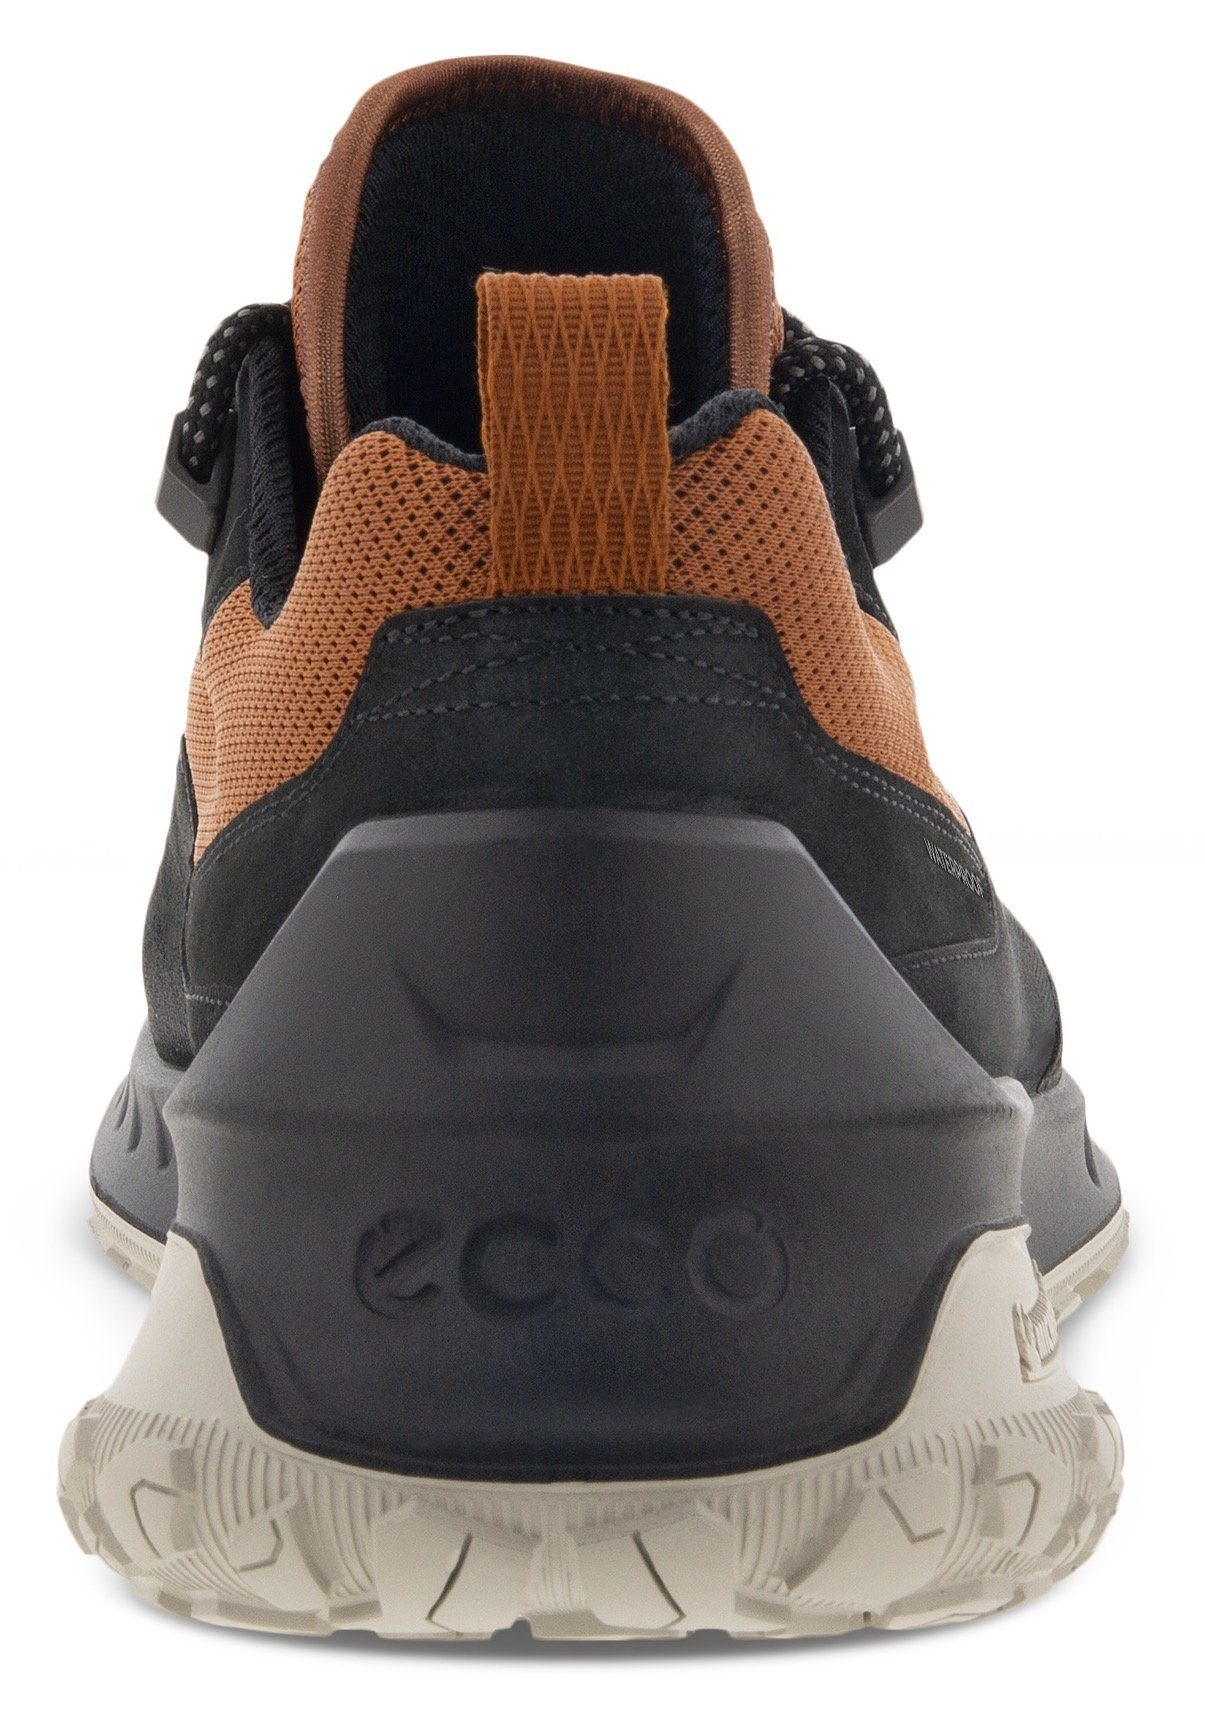 Sneaker cognac-schwarz Michelin-Technologie sportive Laufsohle M mit Ecco ULT-TRN